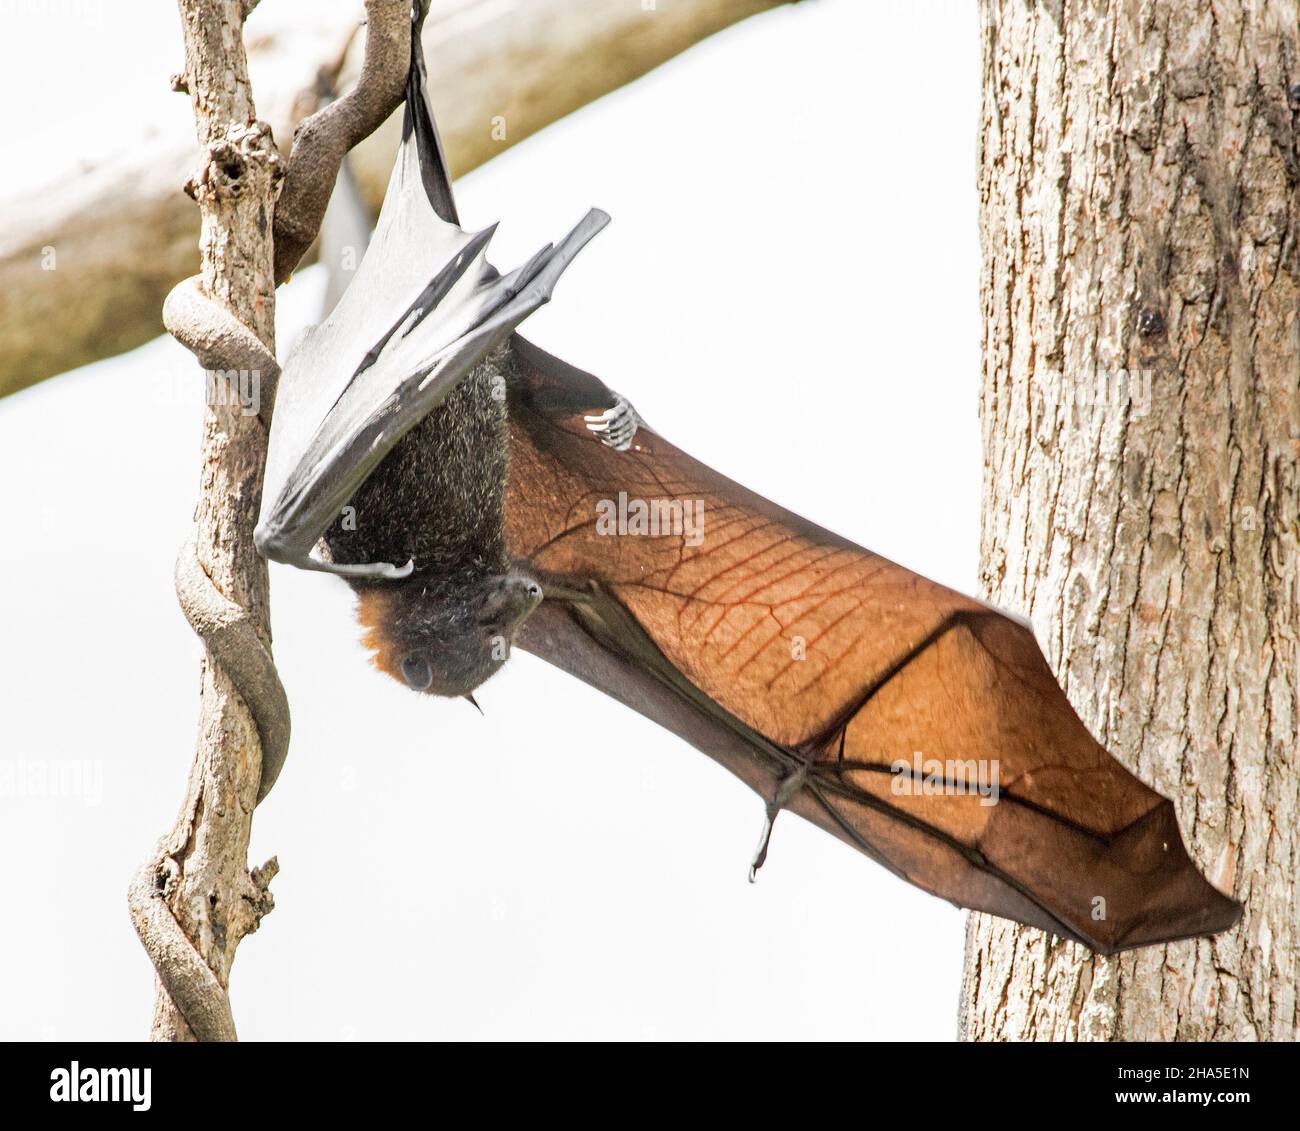 Australischer Graukopffliegender Fuchs / Fruchtfledermaus, Pteropus poliocephalus, am Ast eines Baumes hängend, mit ausgestreckten Flügeln und flugbereit Stockfoto